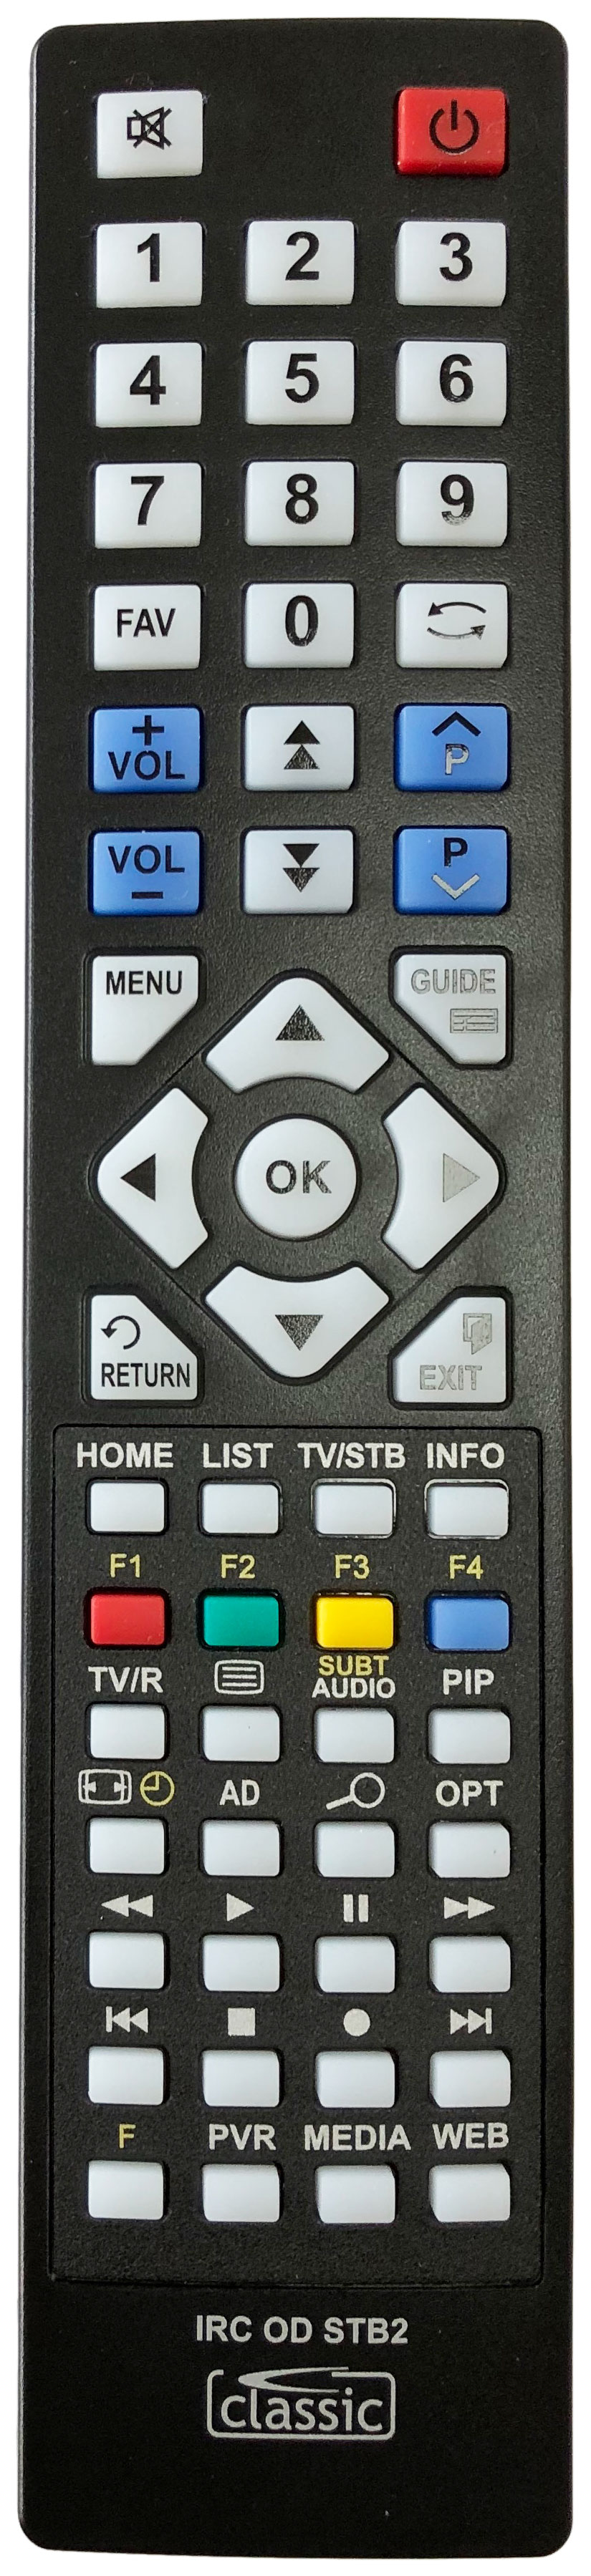 HUMAX FVP-4000T 1TB - Mocha Remote Control Alternative